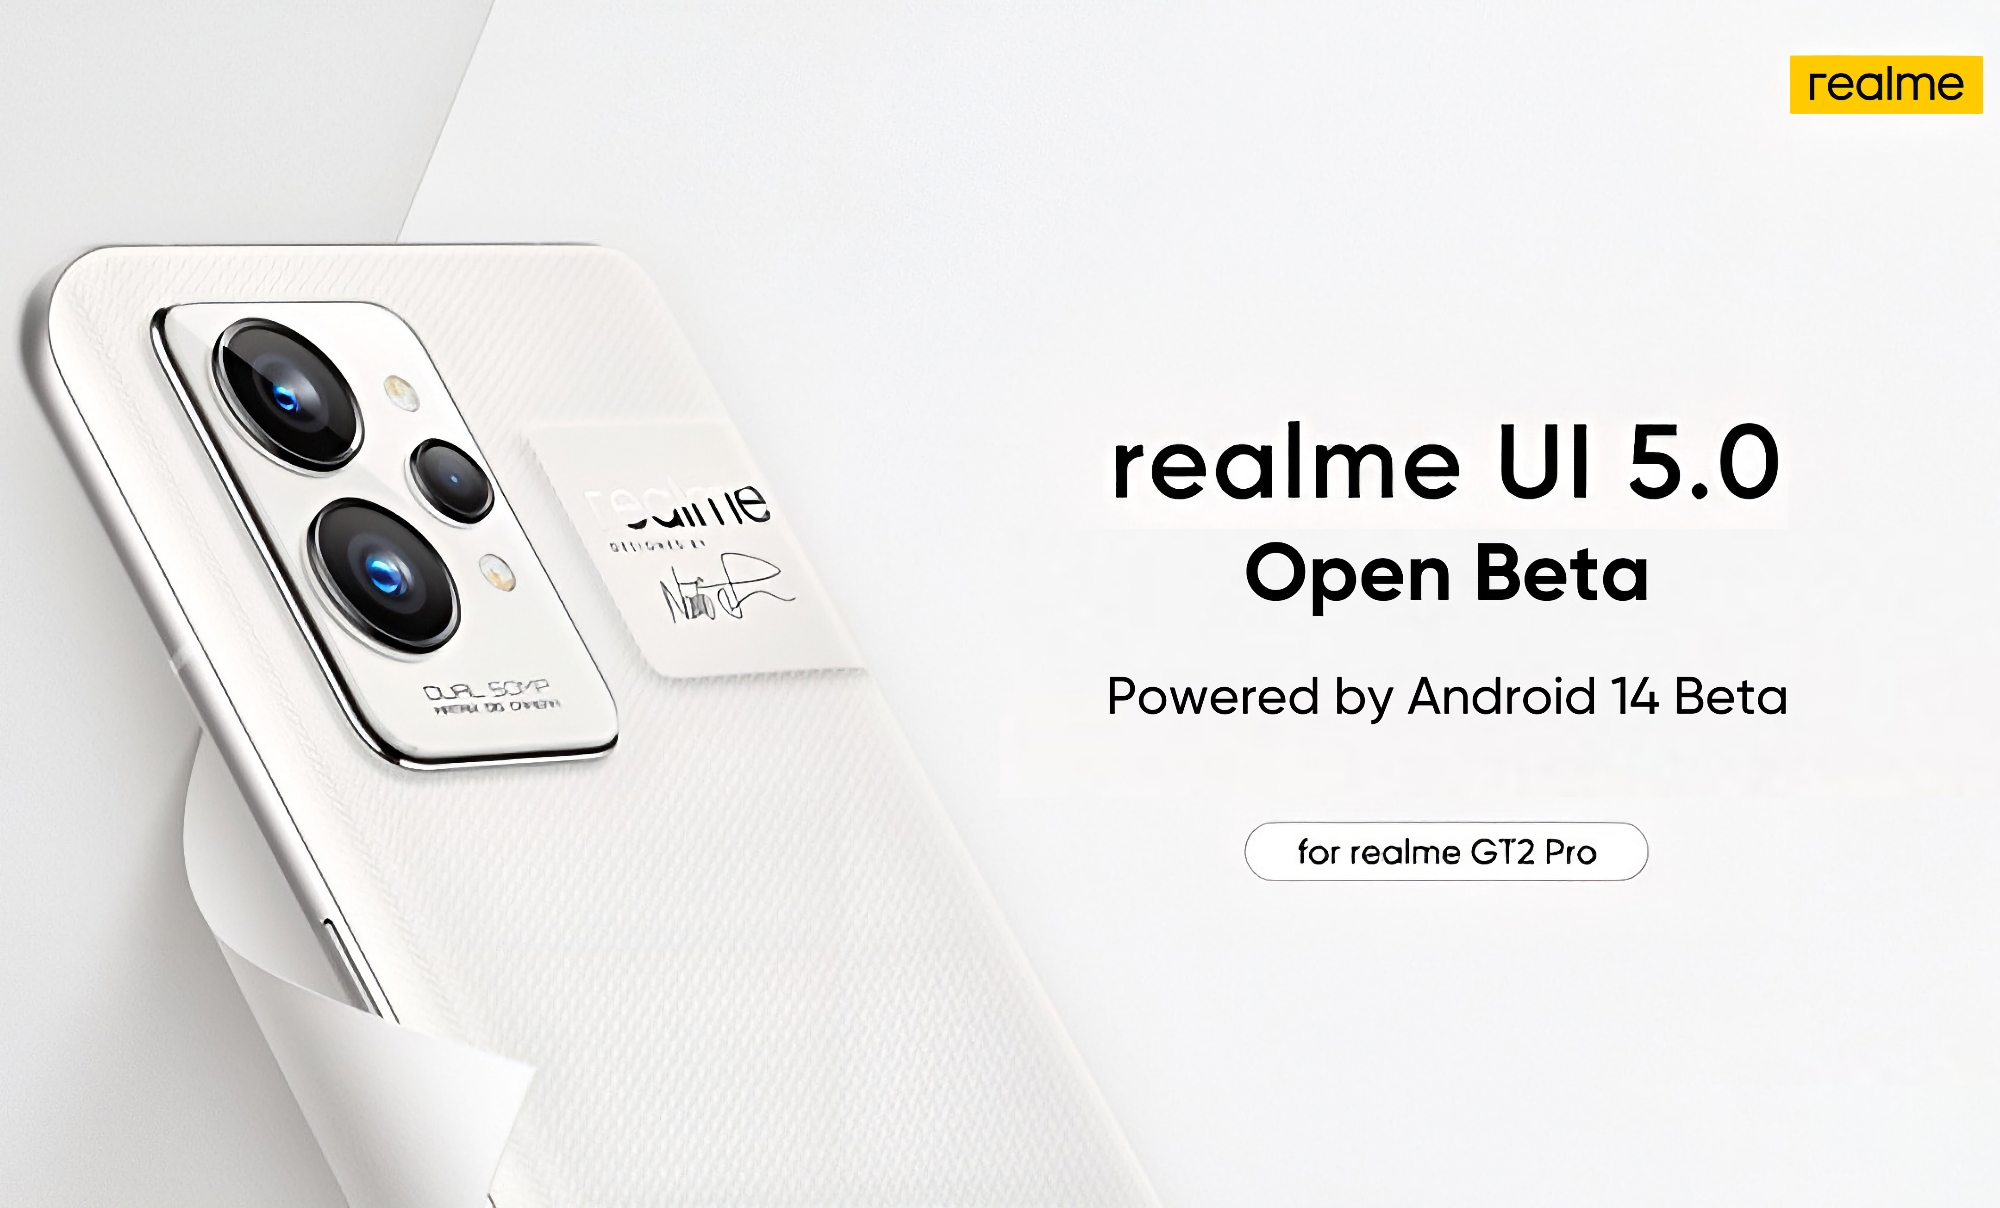 Realme GT 2 Pro har mottatt Android 14 beta med realme UI 5.0 shell.